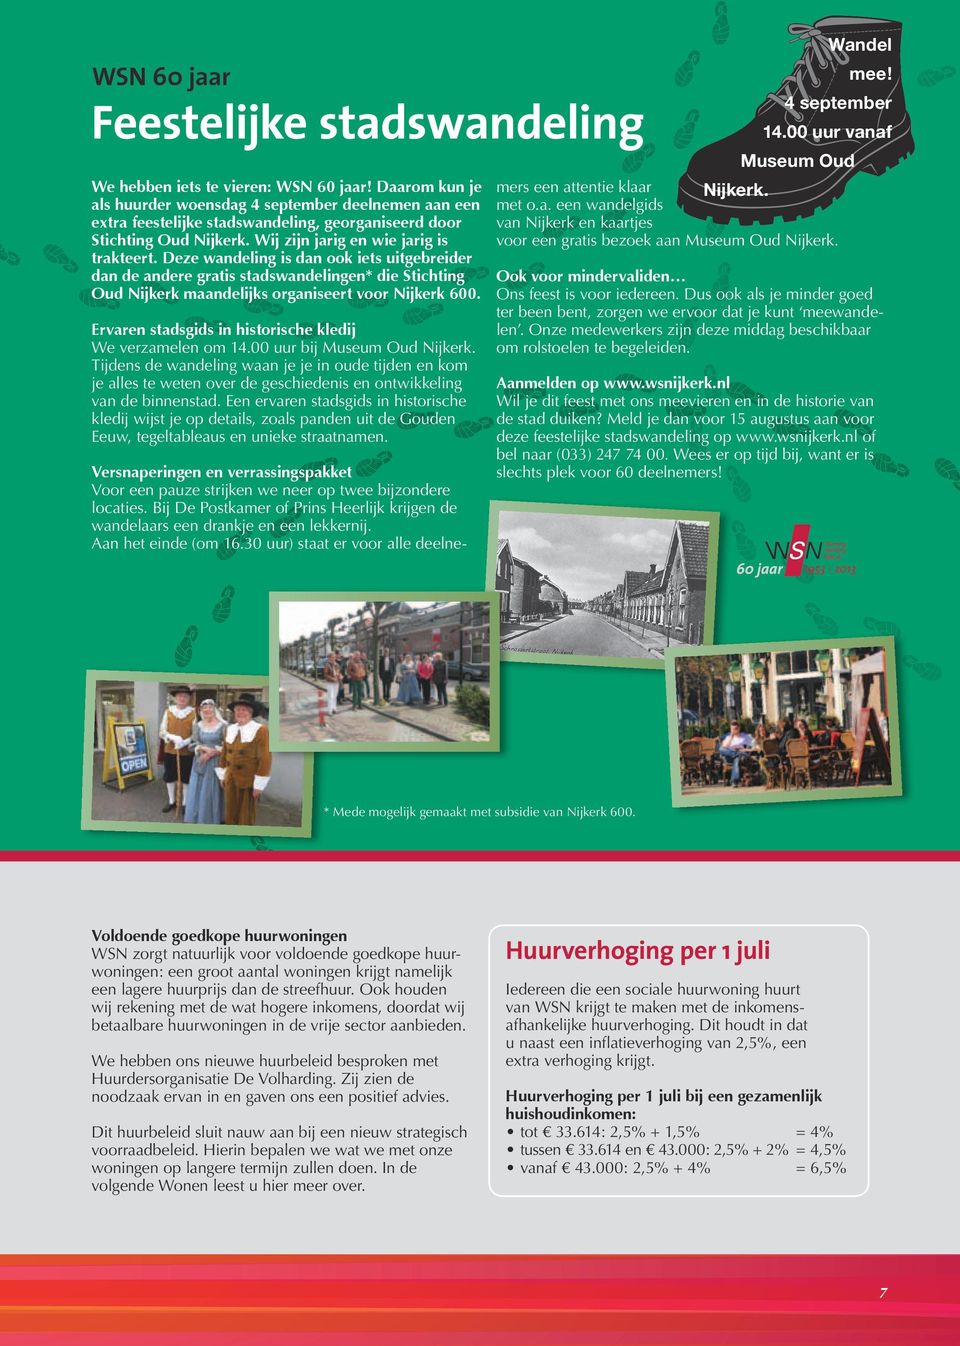 Deze wandeling is dan ook iets uitgebreider dan de andere gratis stadswandelingen* die Stichting Oud Nijkerk maandelijks organiseert voor Nijkerk 600.